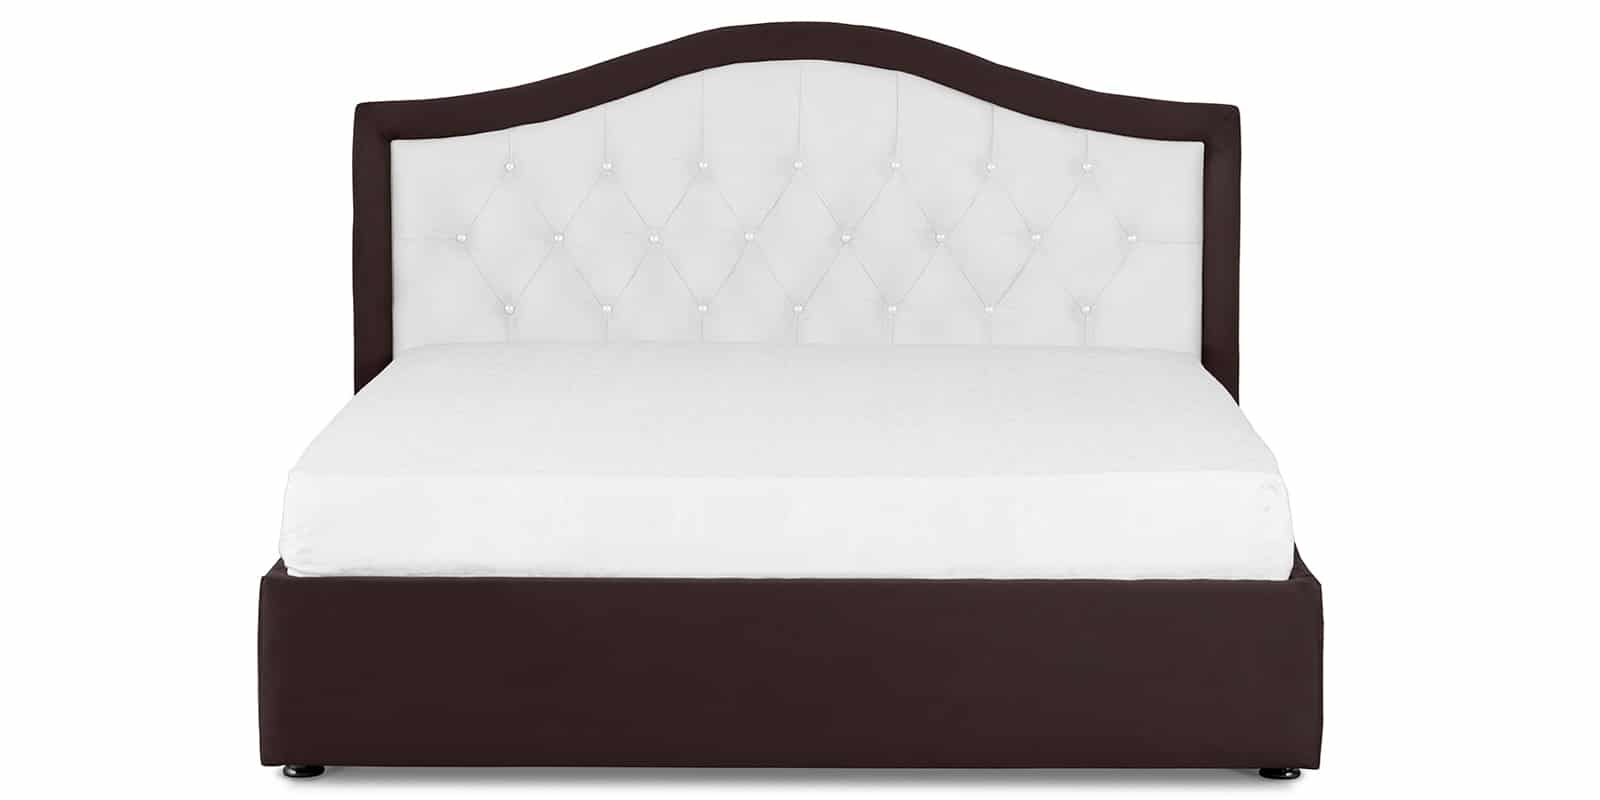 Мягкая кровать Малибу 160 см экокожа белый-шоколад вариант 9-2 фото 2 | интернет-магазин Складно